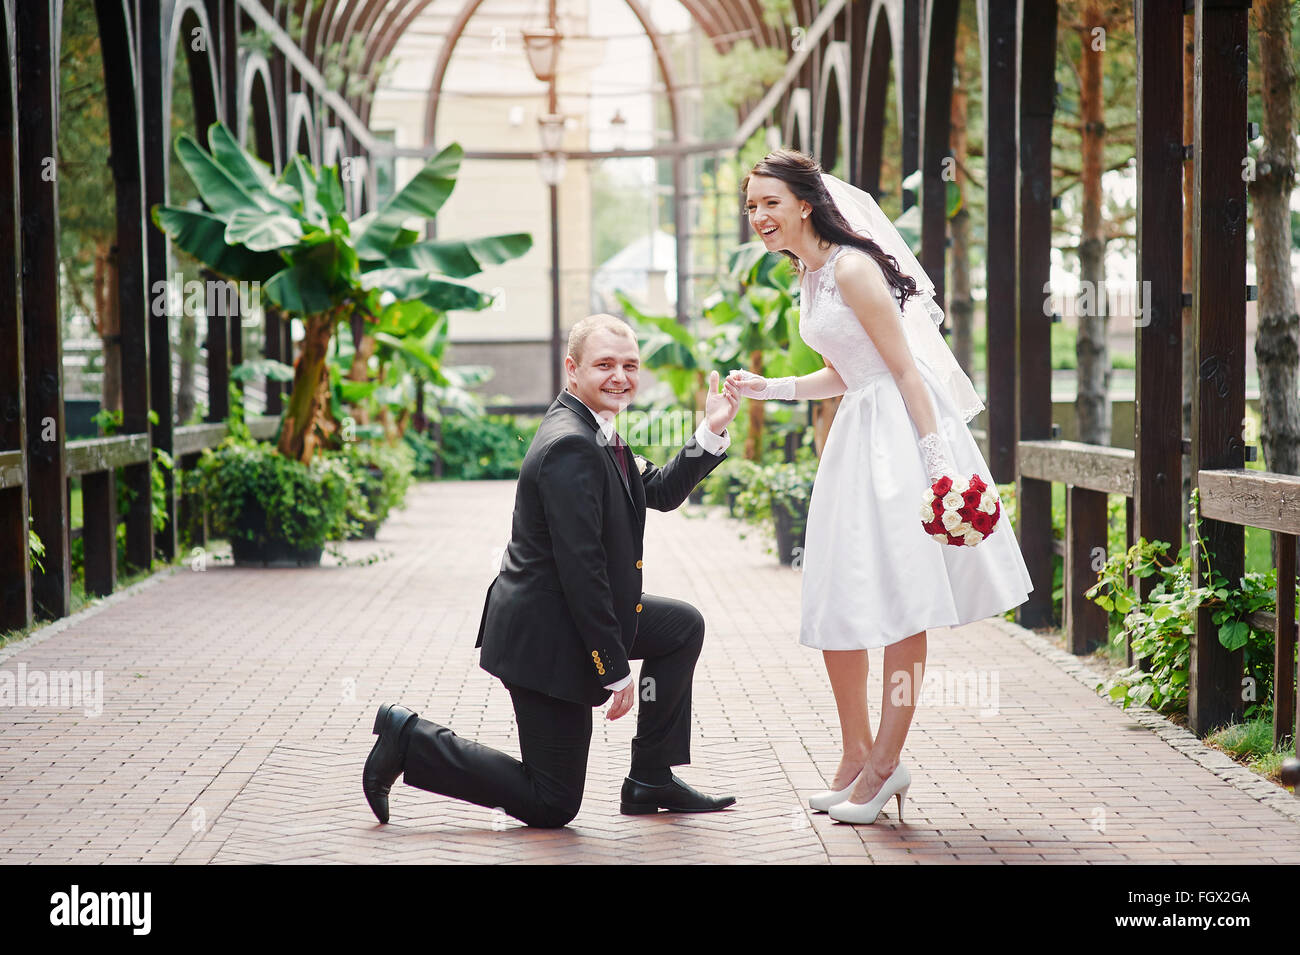 Bräutigam kniet auf einem Knie vor eine glückliche Braut Stockfoto